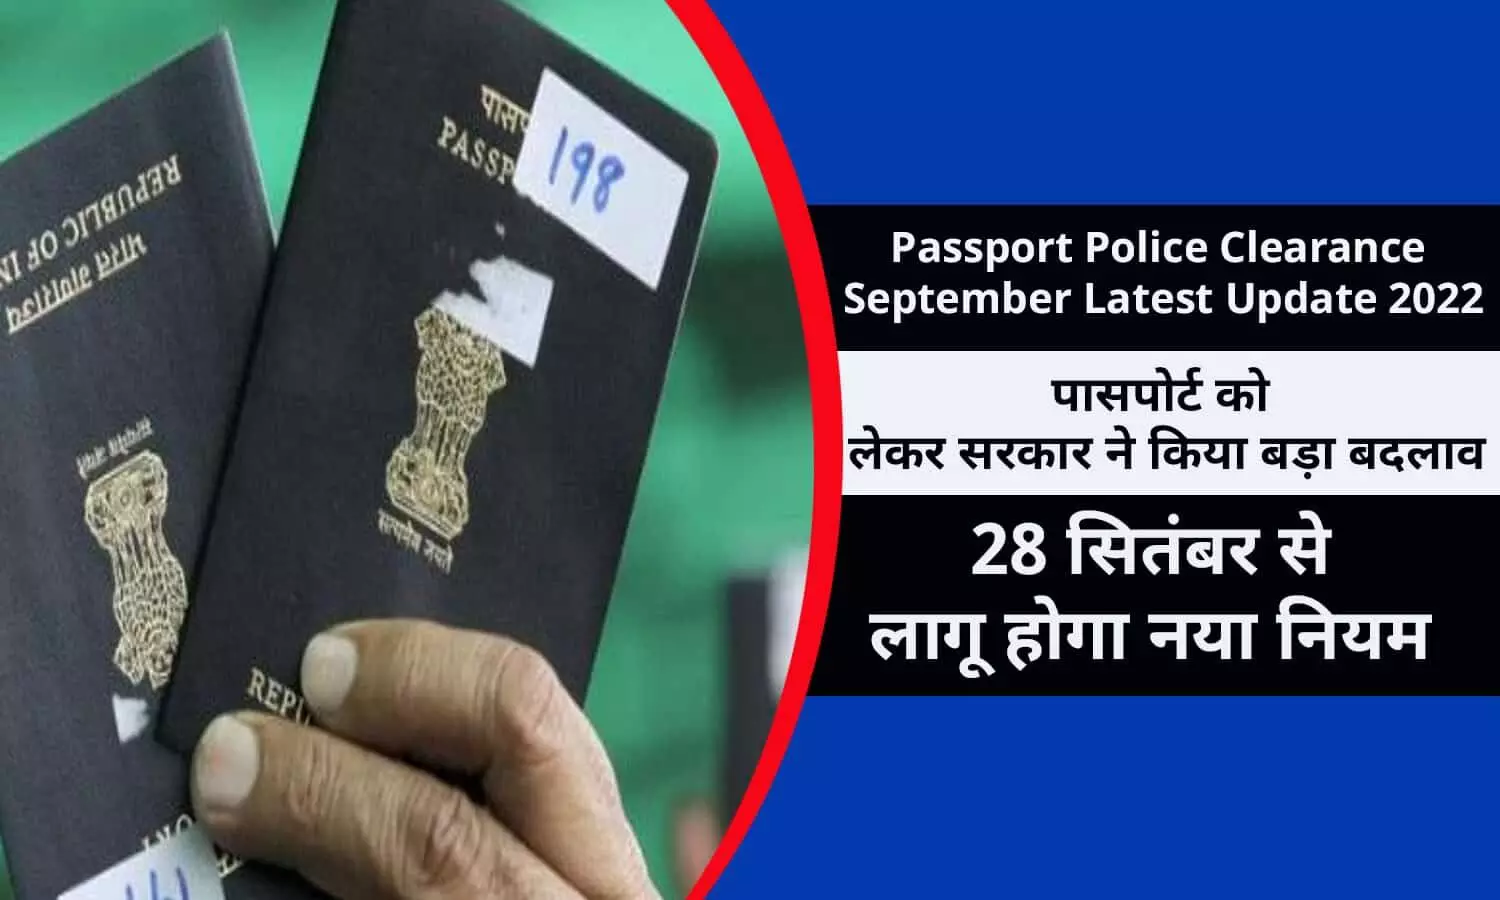 Passport Police Clearance September Latest Update 2022: अभी-अभी पासपोर्ट को लेकर सरकार ने क‍िया बड़ा बदलाव, 28 सितंबर से लागू होगा नया न‍ियम, फटाफट जाने